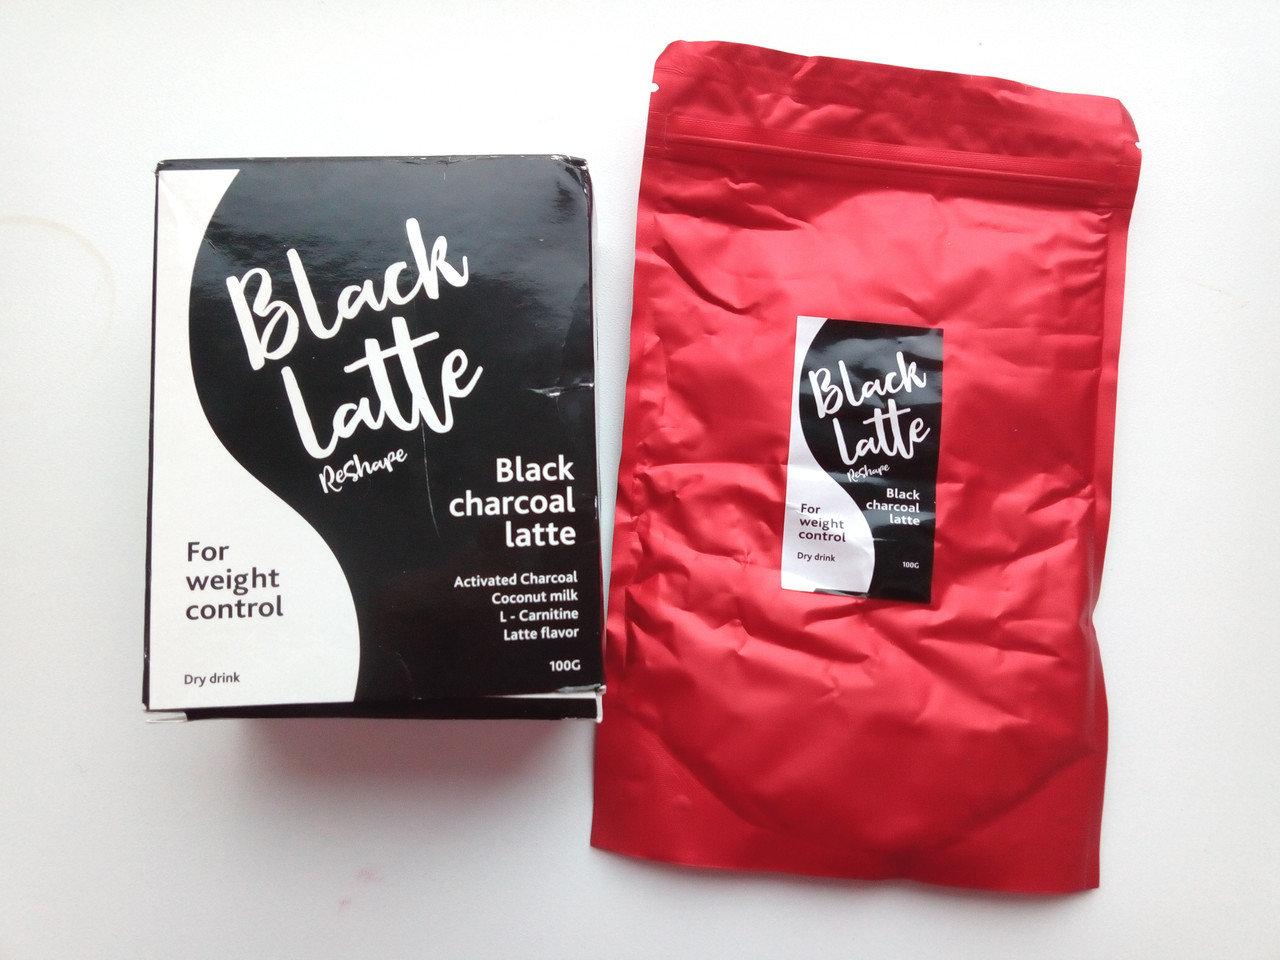 Black Latte - Вугільний Латте кава для схуднення (Блек Латте) коробка - СЕРТИФІКАТ